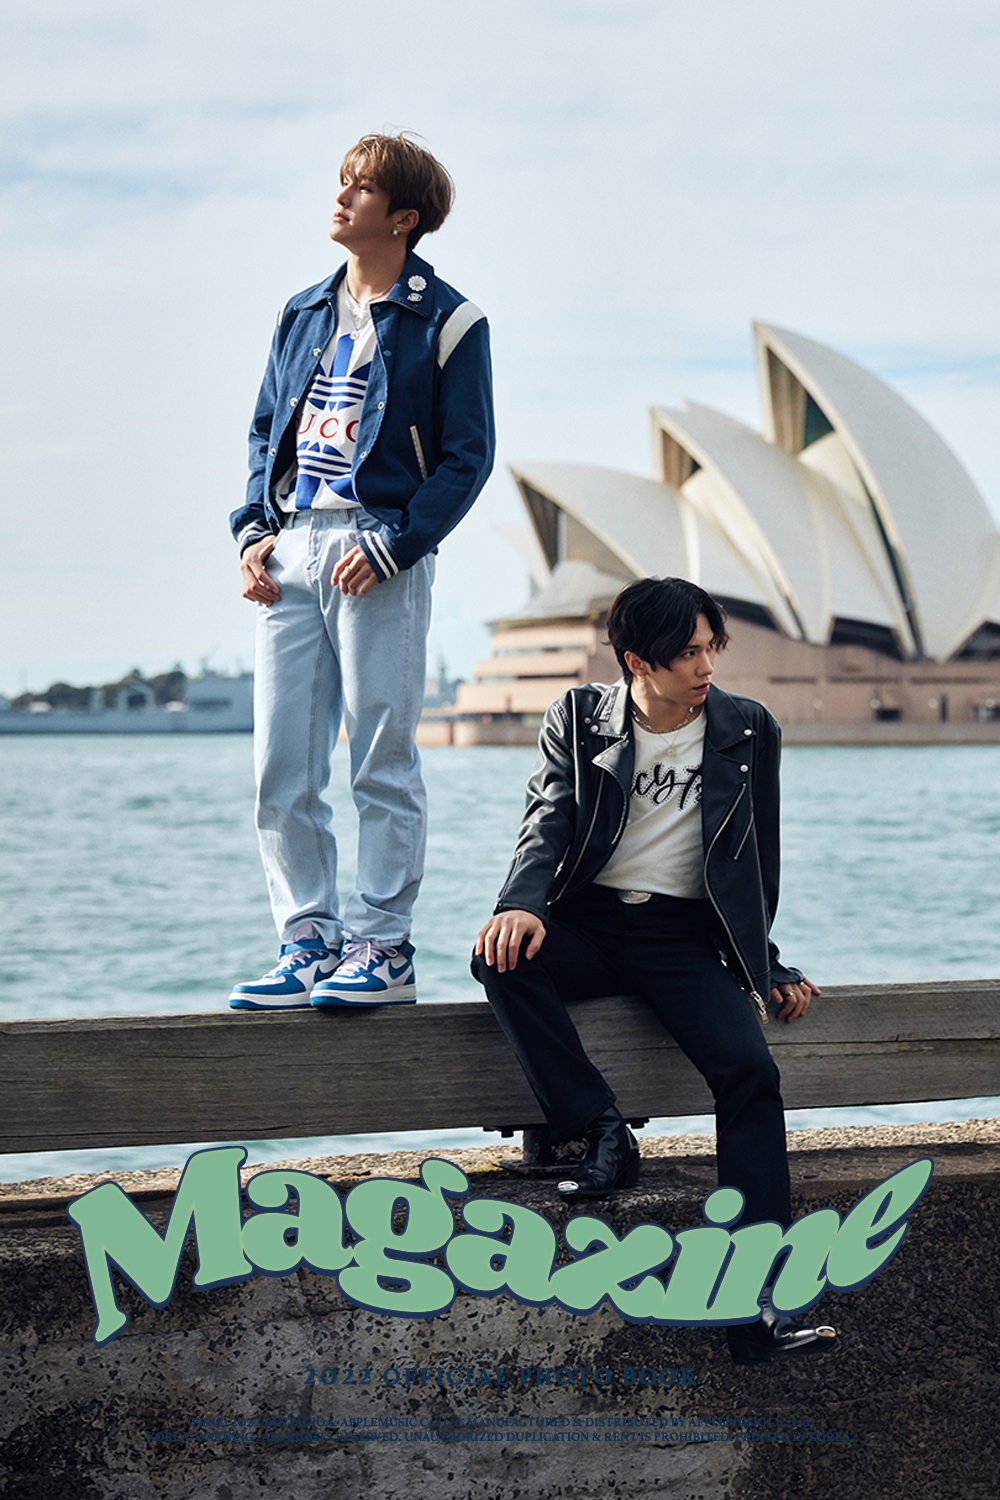 Jinjin & Rocky, 'Hip & Cool' photobook teaser image released